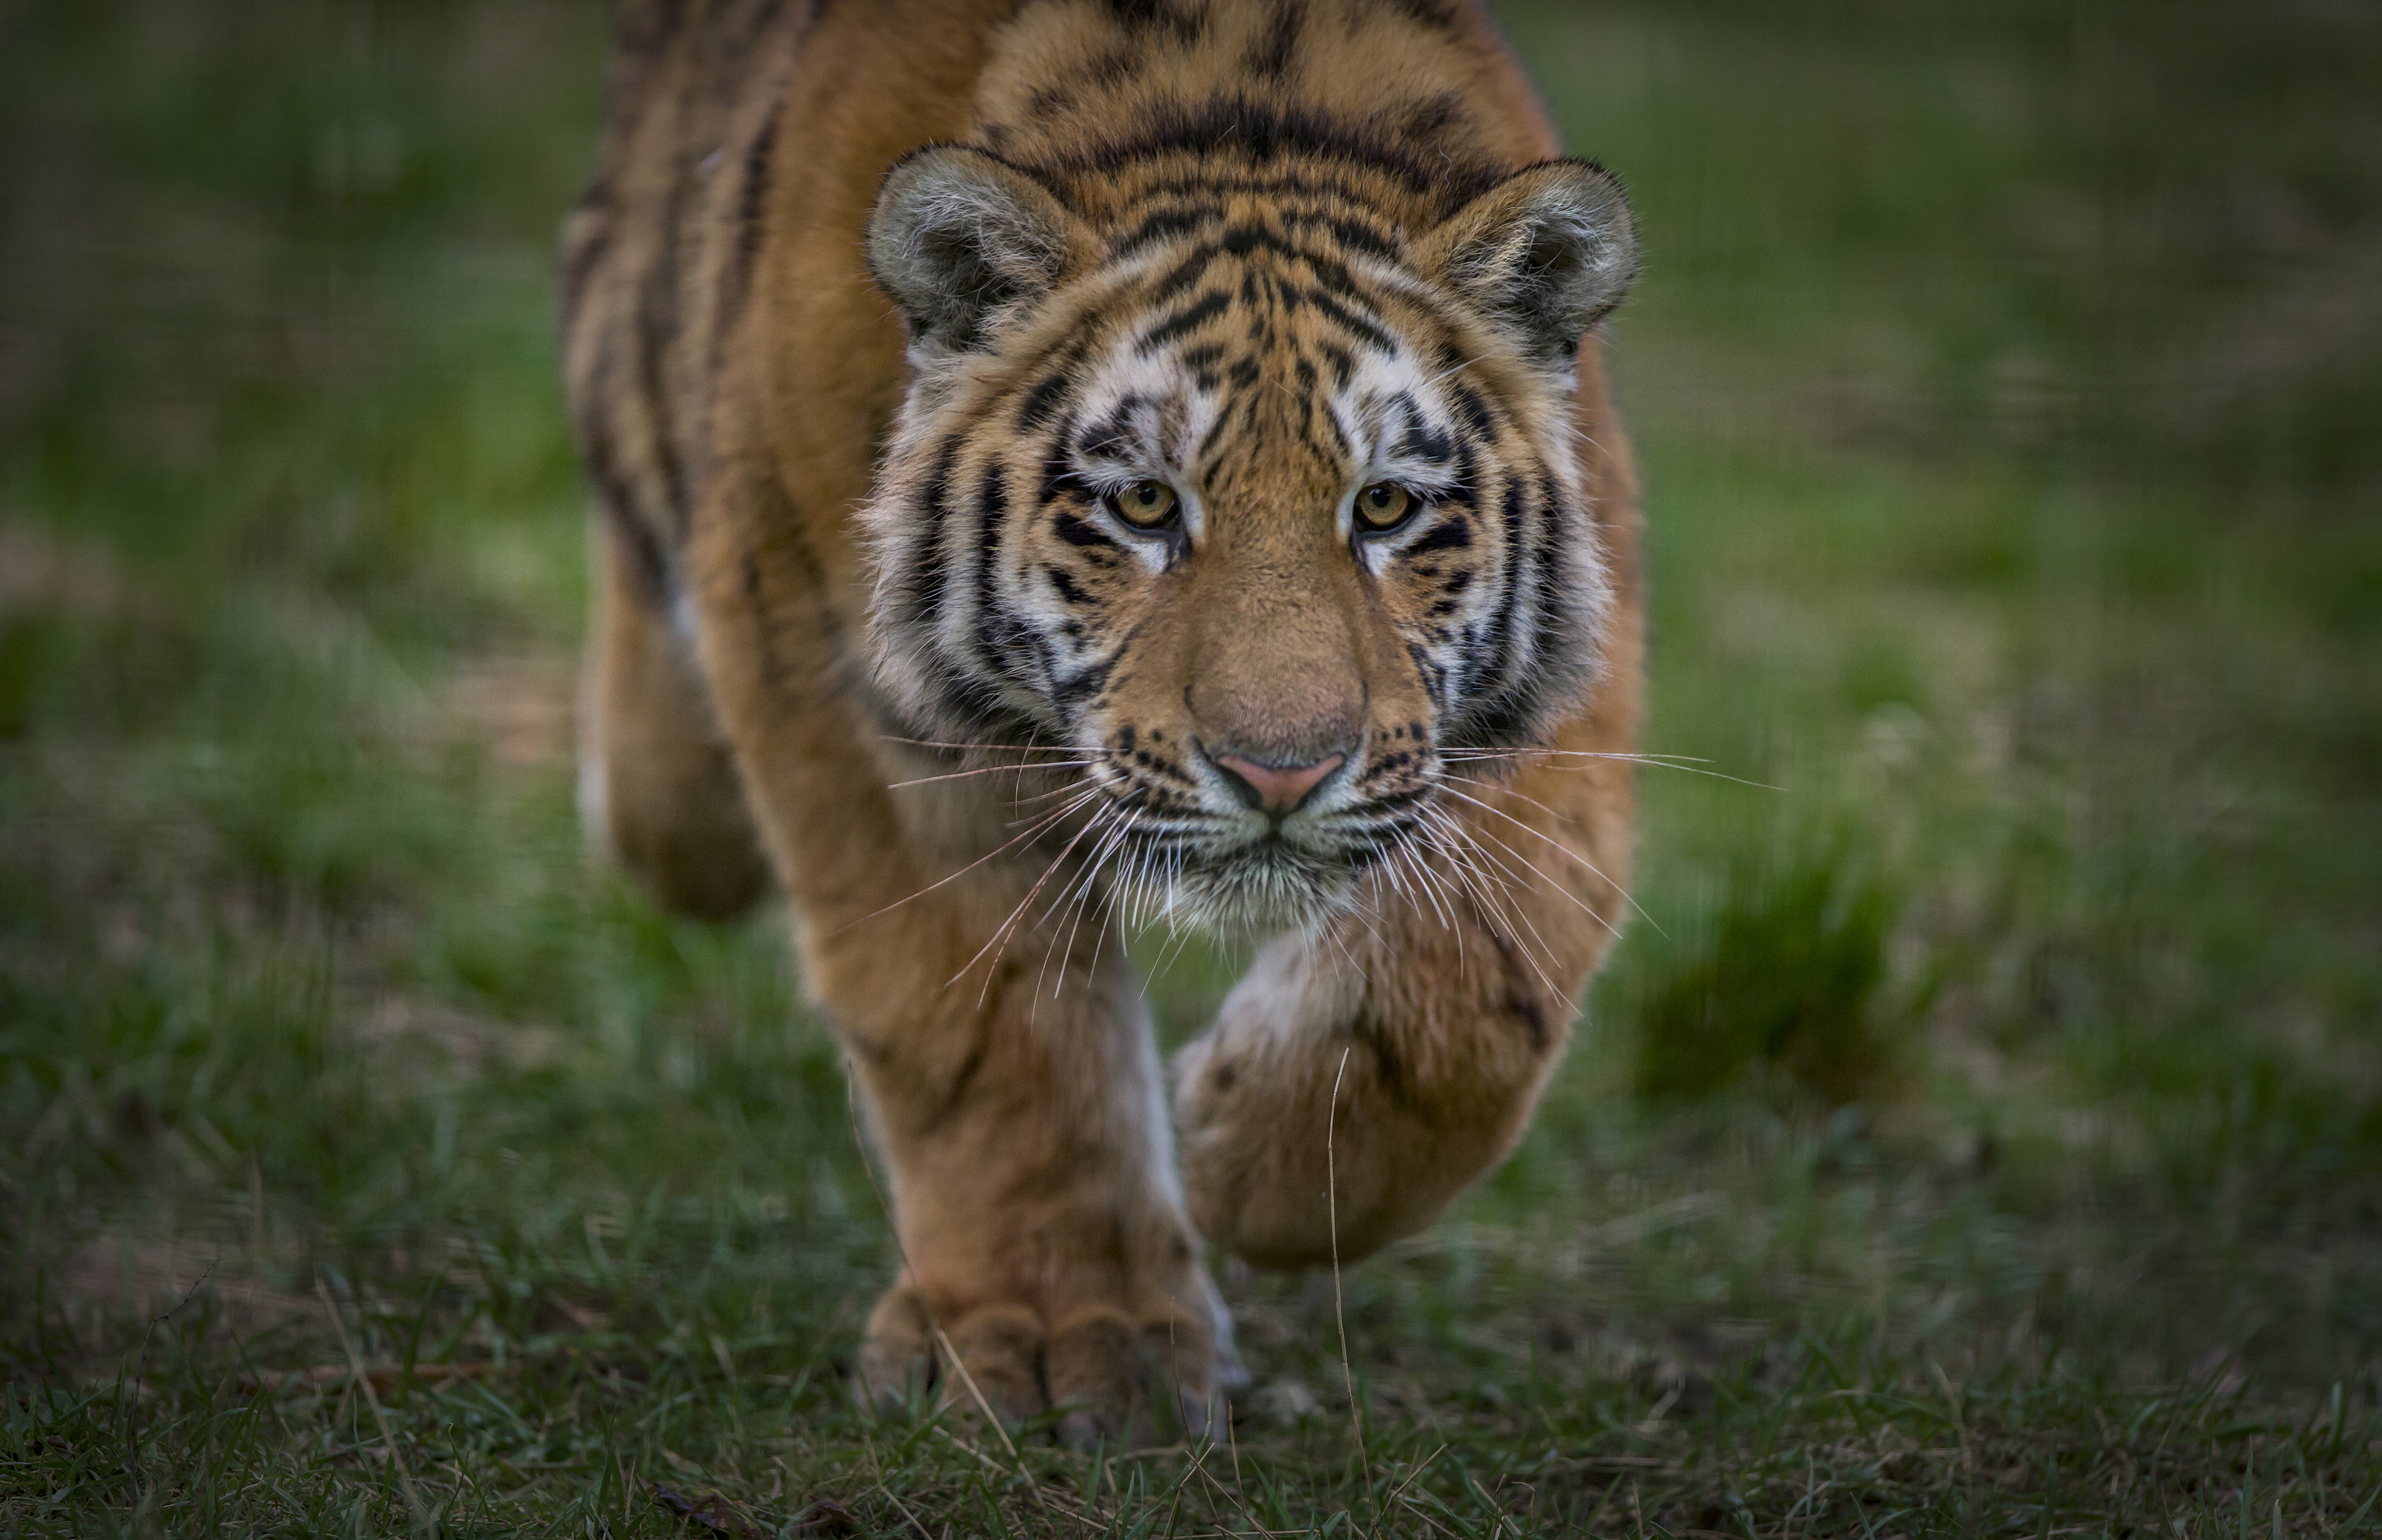 Бесплатное фото Фото смотреть амурский тигр, большая кошка бесплатно